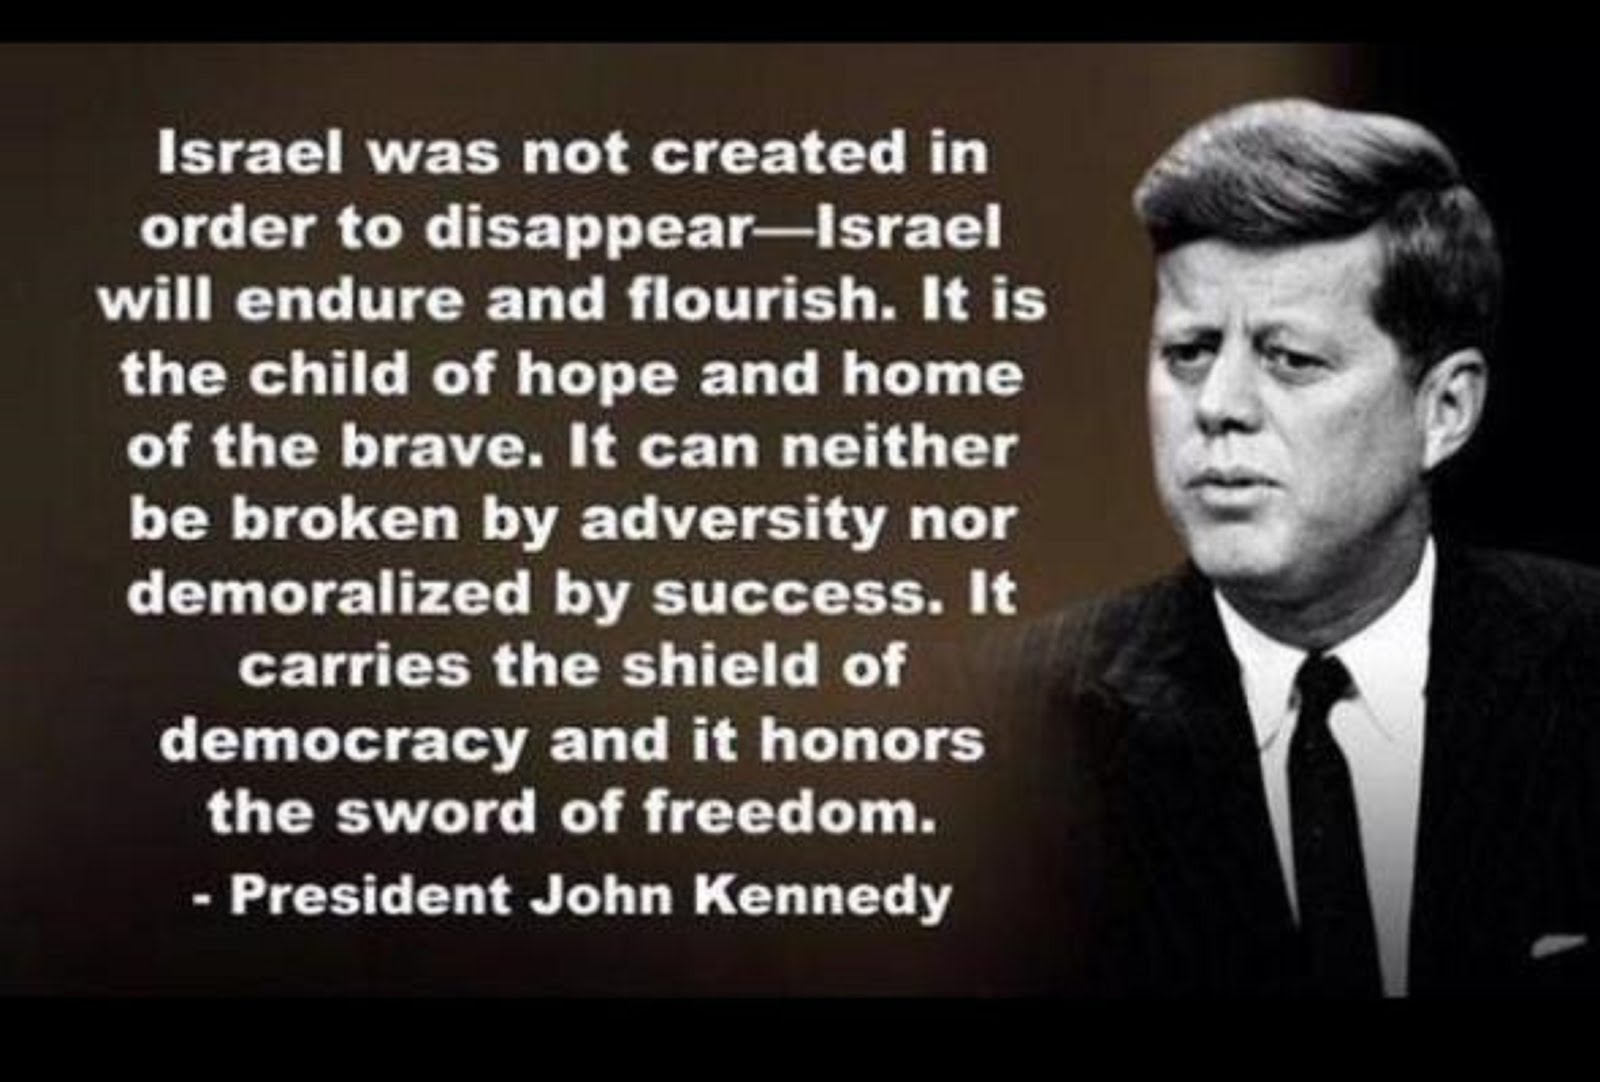 JFK ON ISRAEL